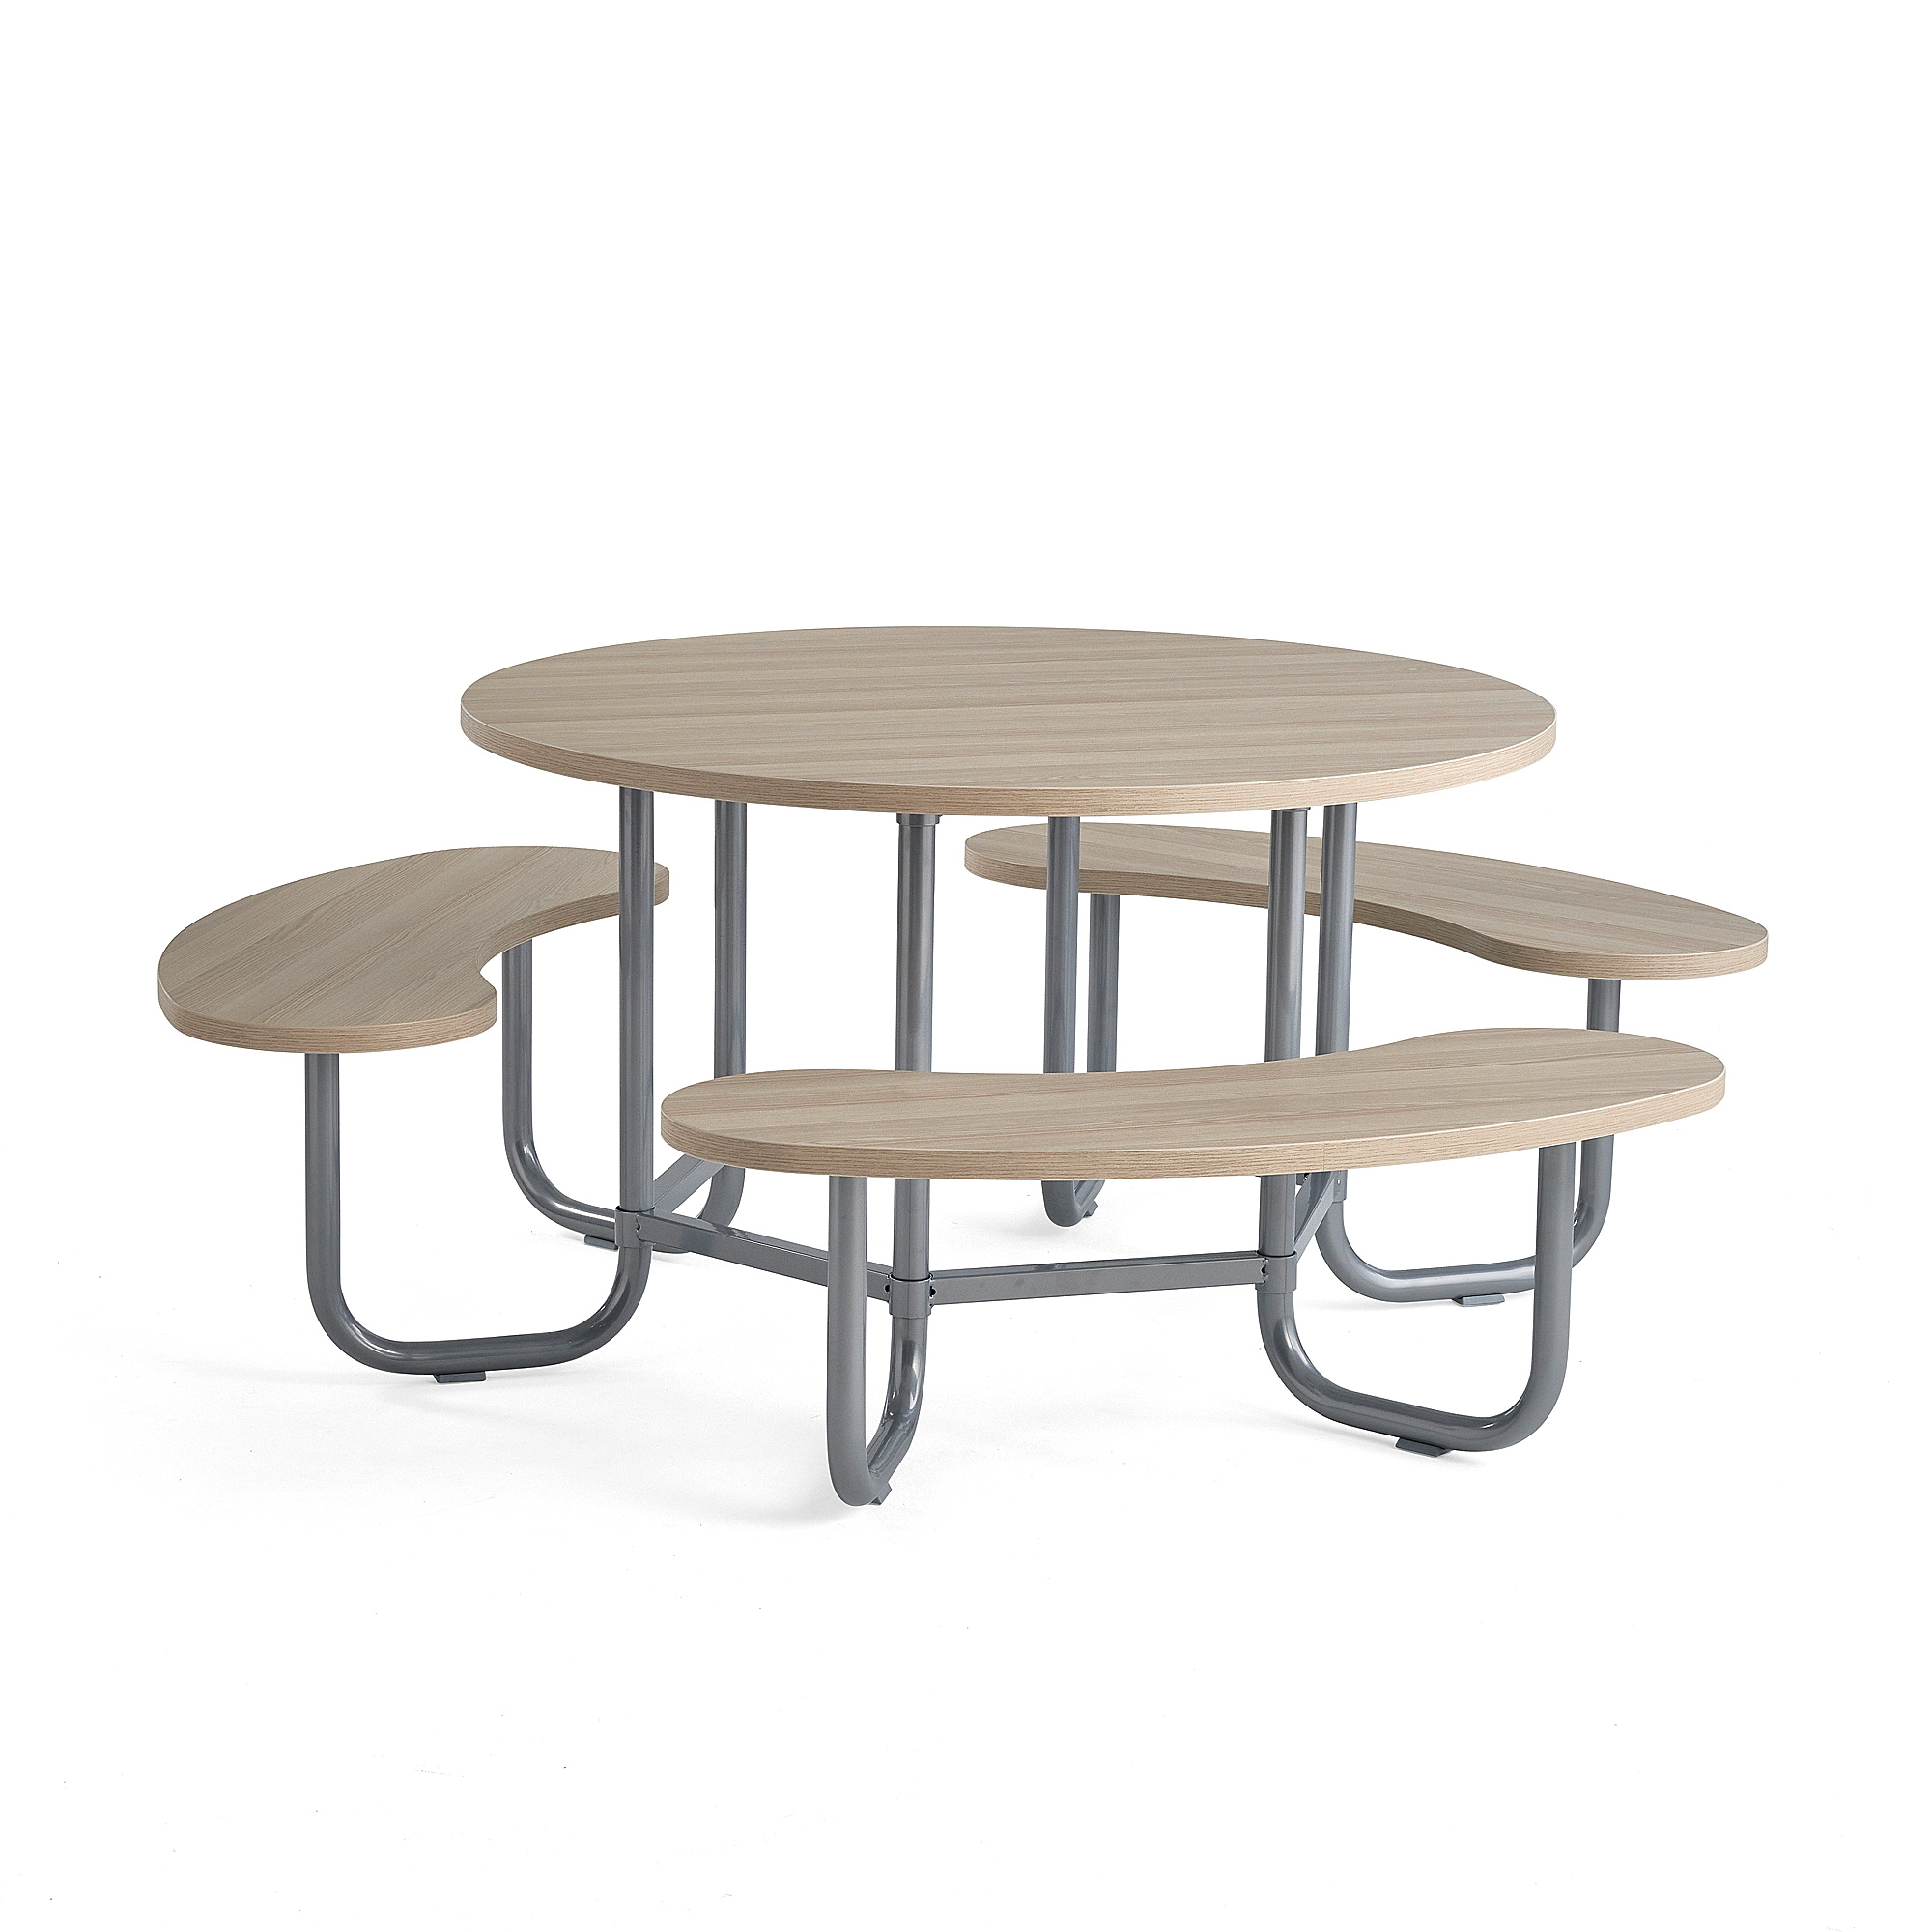 Stůl s lavicemi OCTO, stříbrná konstrukce, jasan